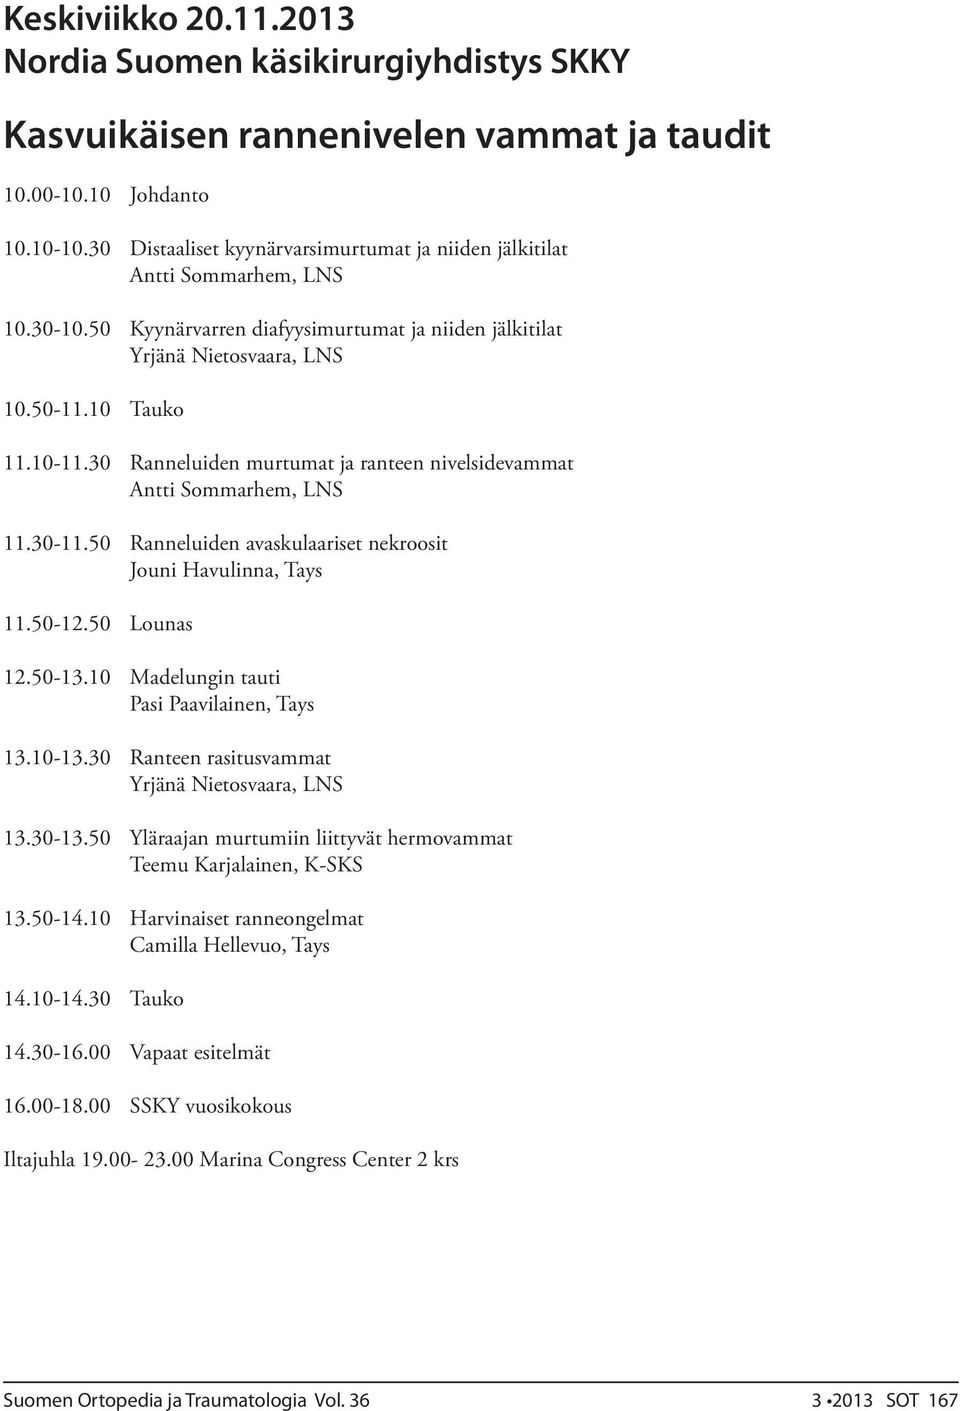 30 Ranneluiden murtumat ja ranteen nivelsidevammat Antti Sommarhem, LNS 11.30-11.50 Ranneluiden avaskulaariset nekroosit Jouni Havulinna, Tays 11.50-12.50 Lounas 12.50-13.